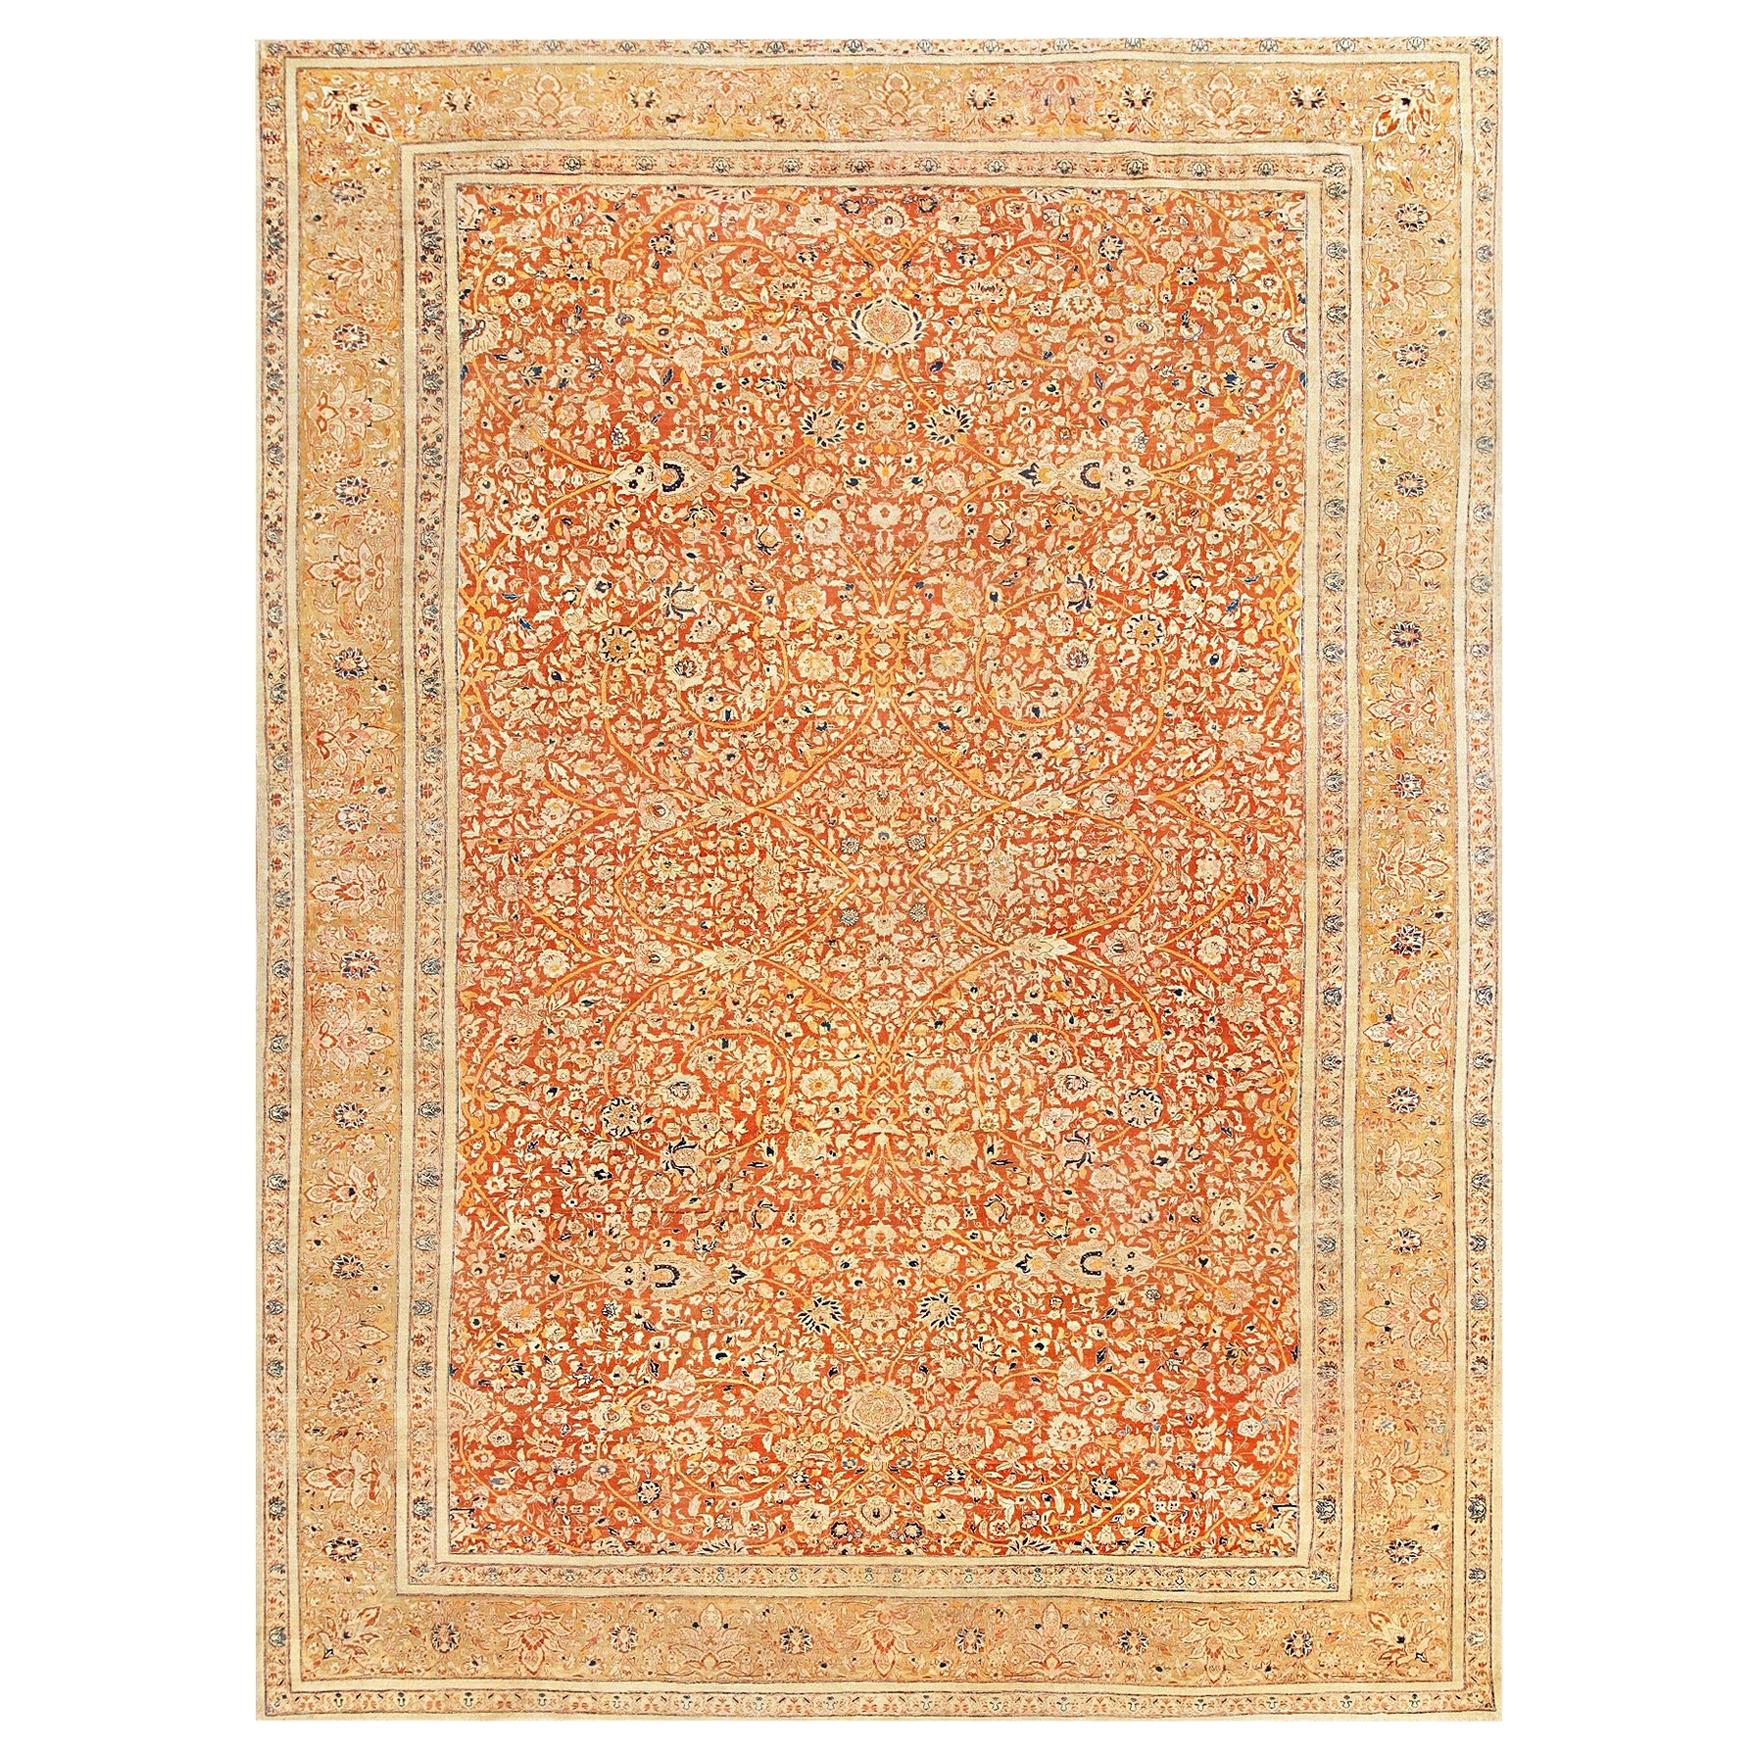 Antique Persian Tabriz Haji Jalili Carpet. Size: 9 ft 6 in x 12 ft 6 in